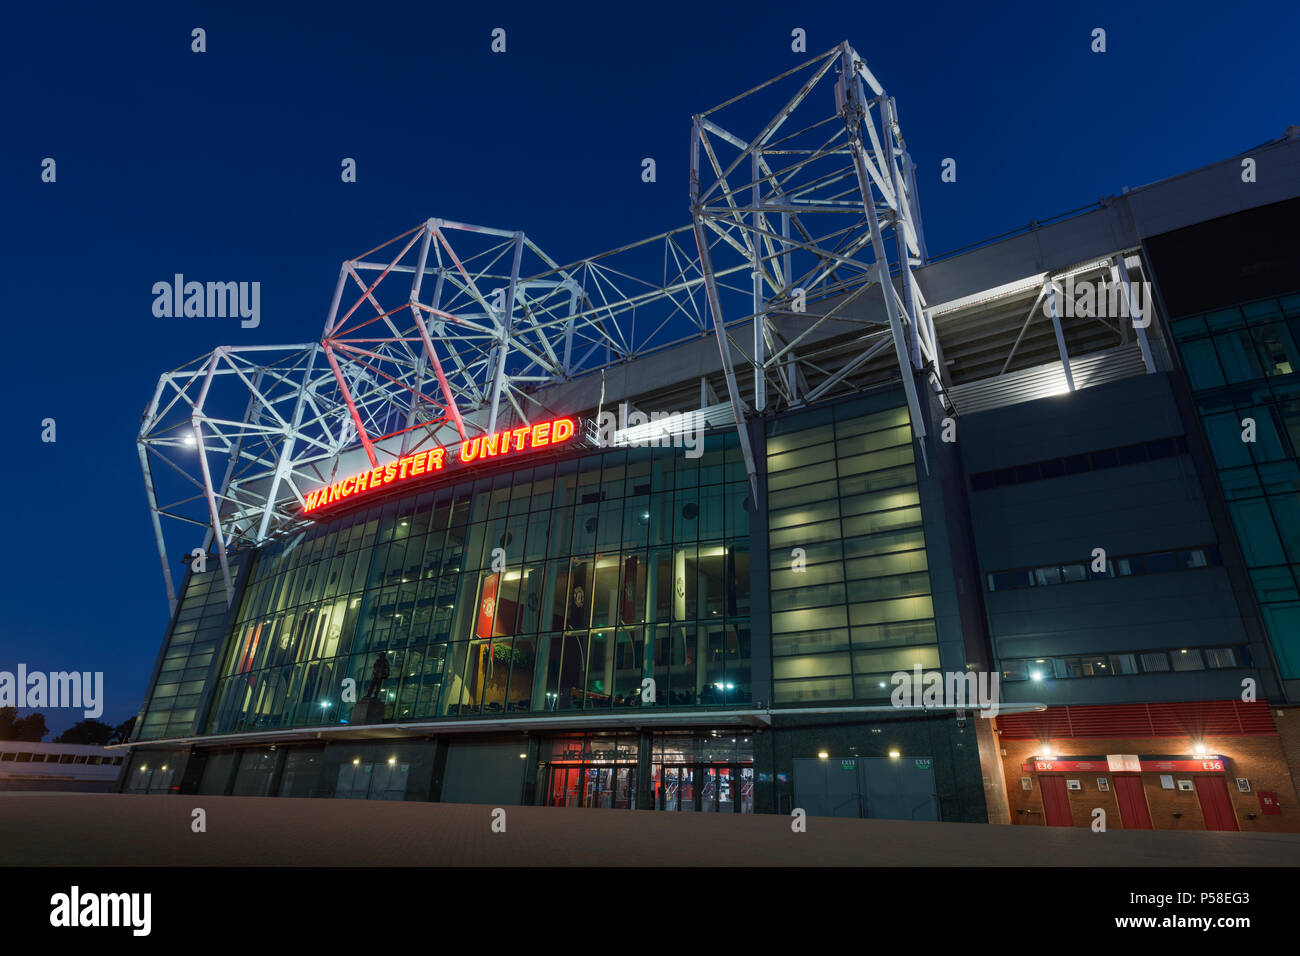 Das Old Trafford Stadium, die Heimat des Manchester United Football Club, während einem Sommerabend (nur redaktionelle Nutzung). Stockfoto